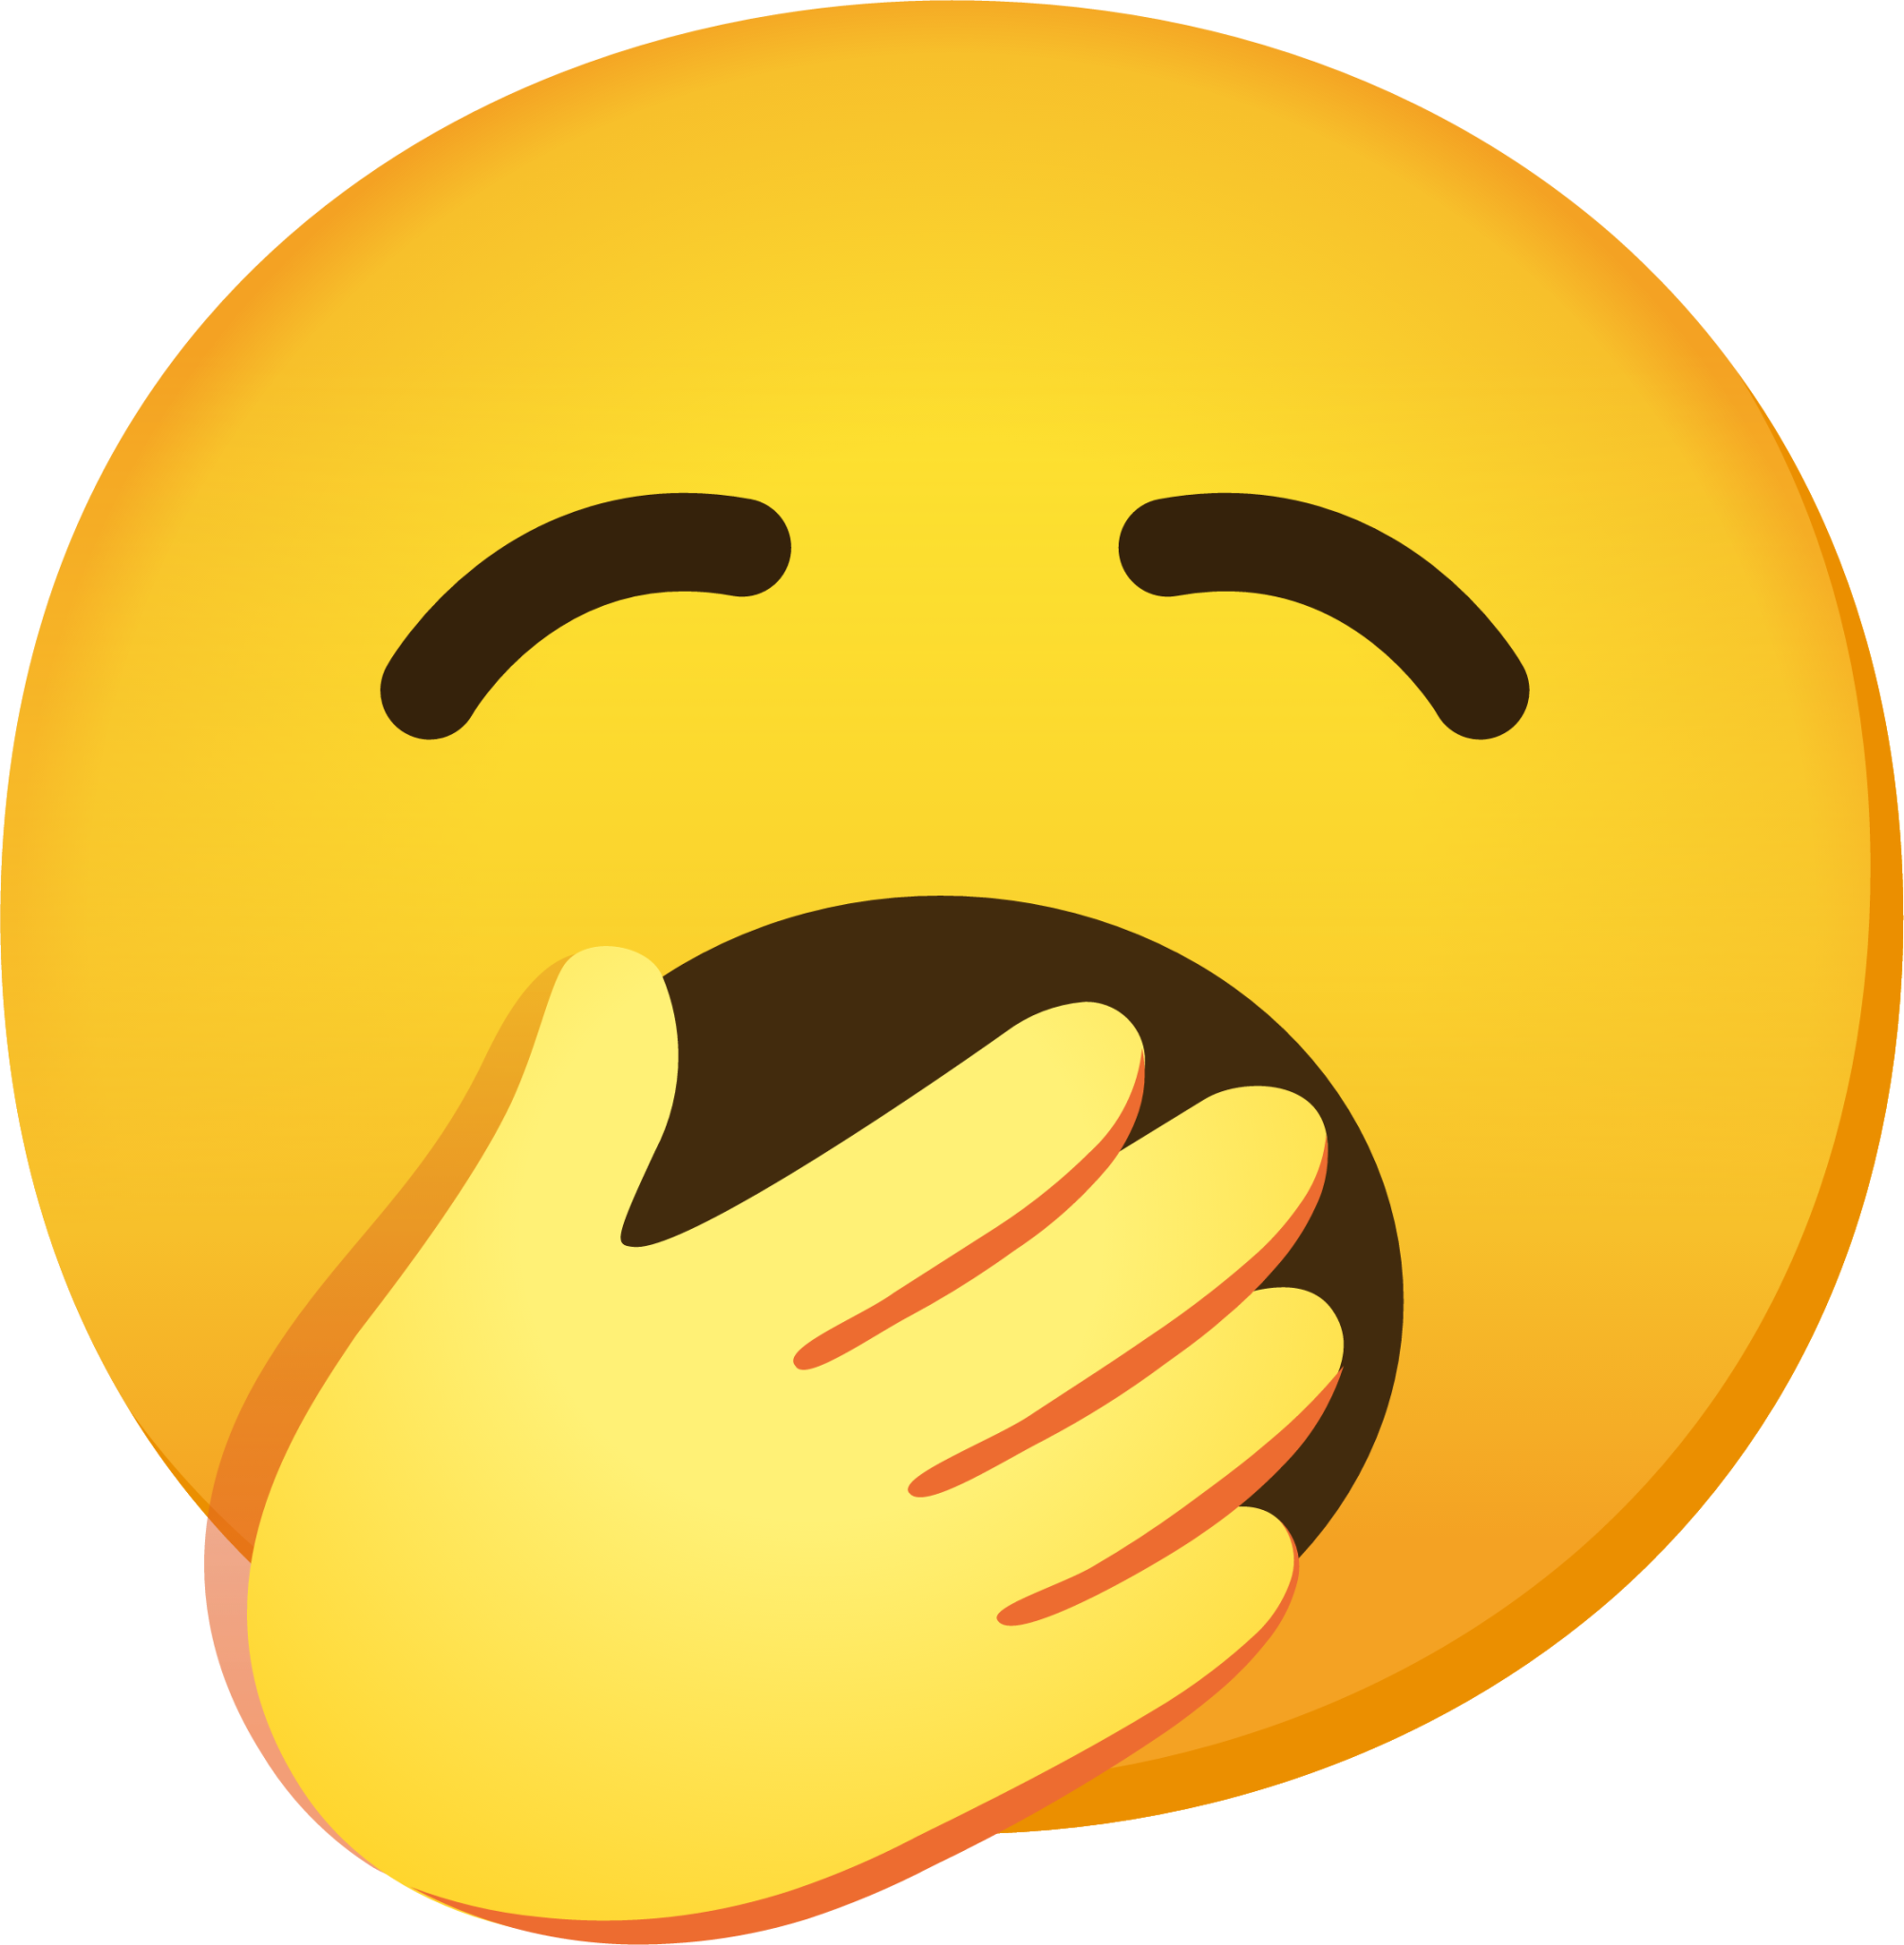 yawning face" Emoji - Download for free – Iconduck